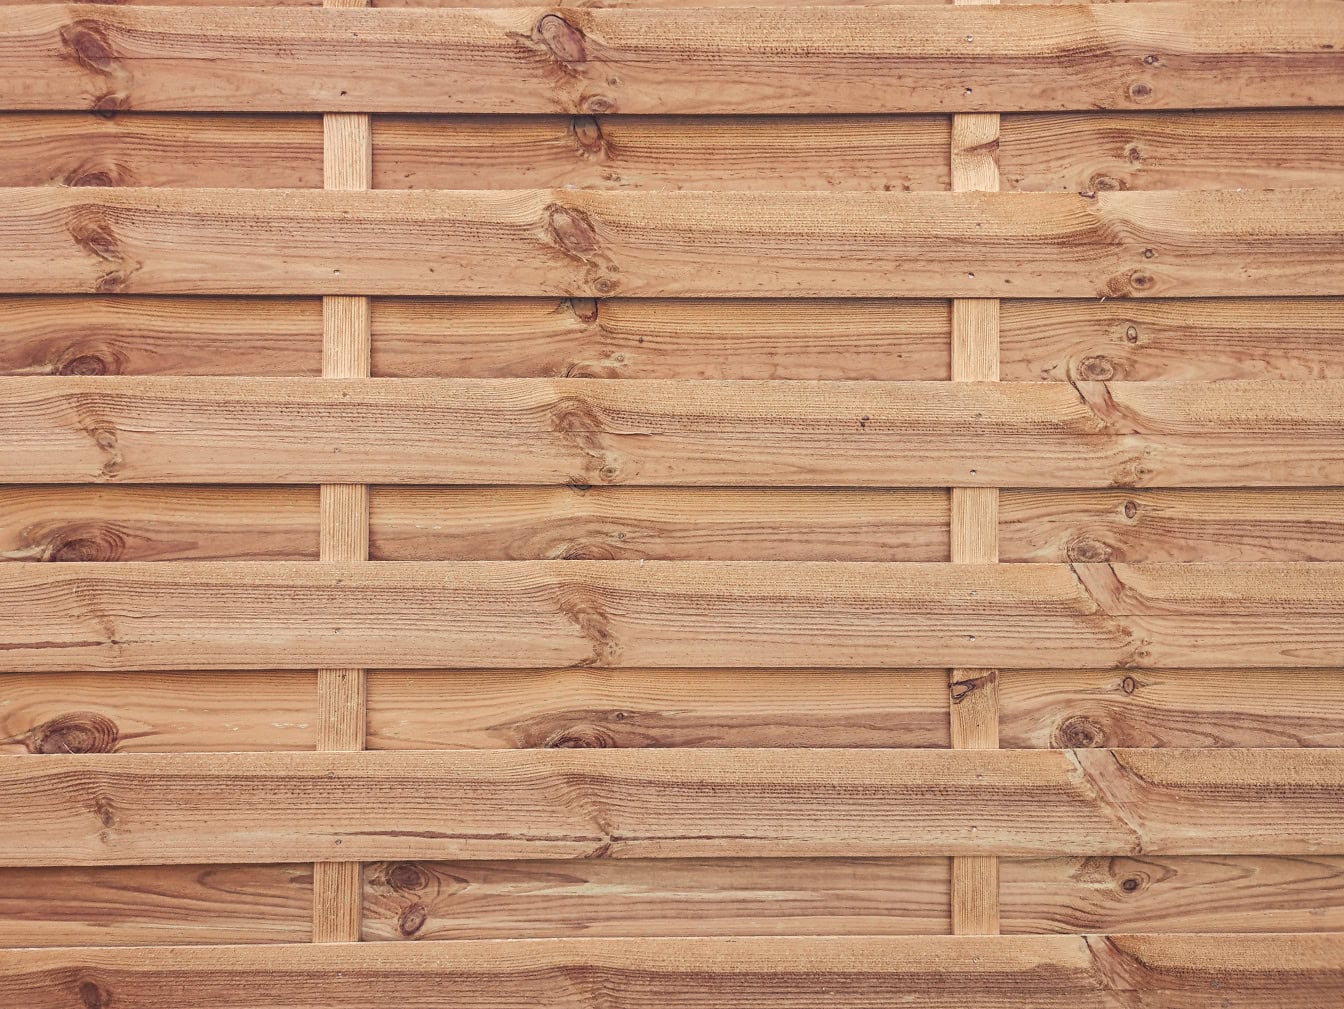 Tekstura drvenog zida izrađenog od tankih drvenih dasaka s čvorovima složenim vodoravno